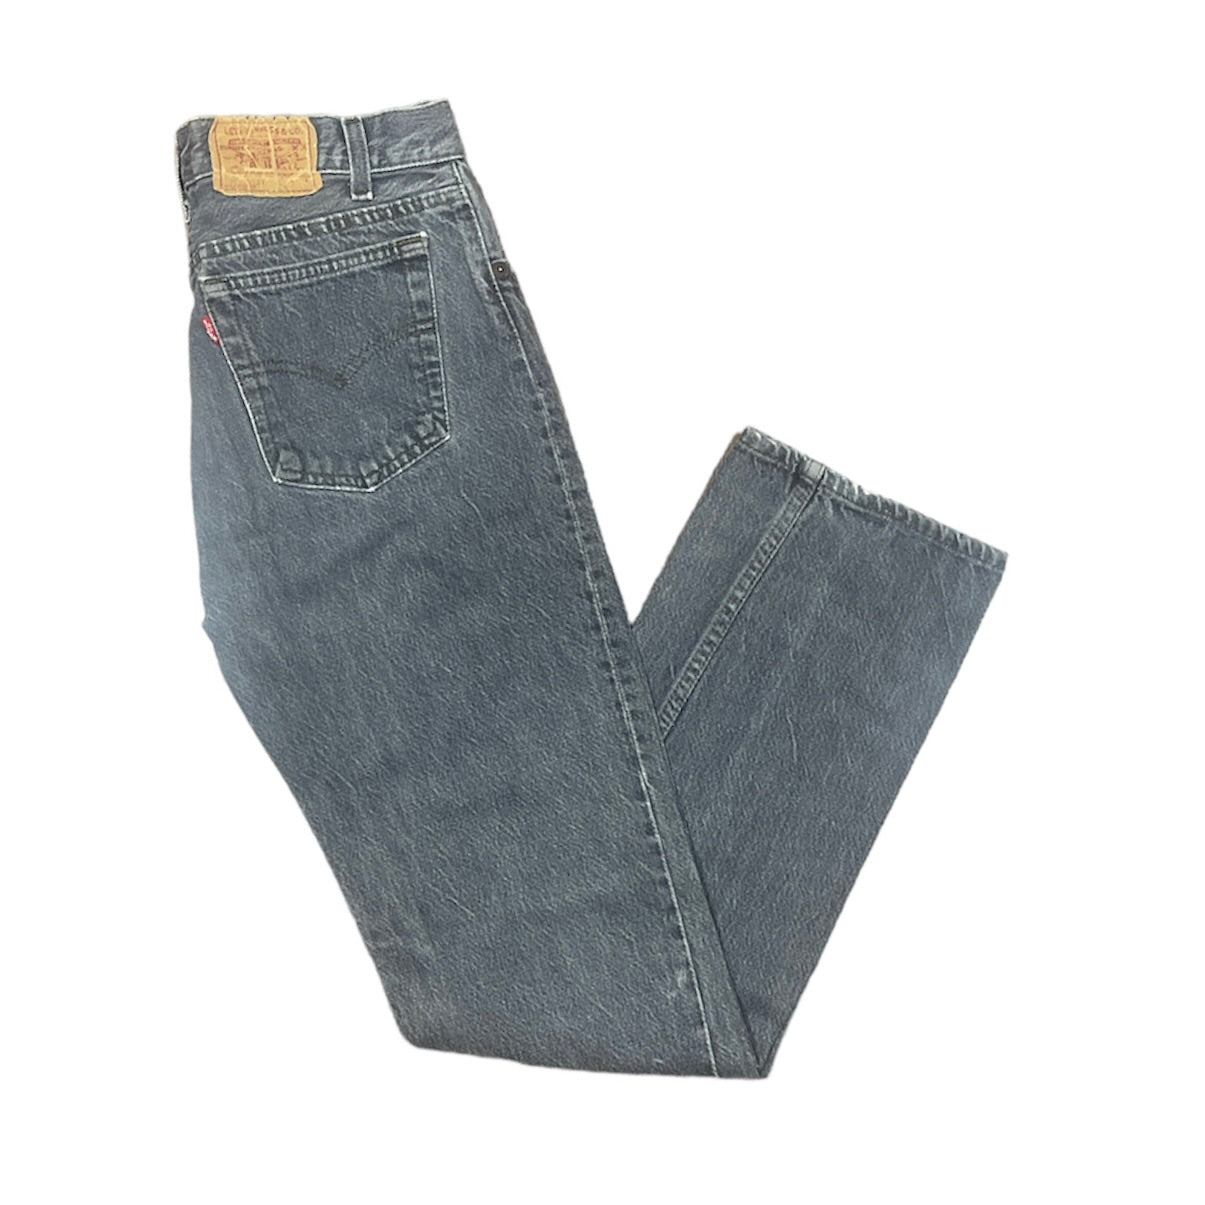 Vintage Levis Student Grey Jeans (W29/L32)